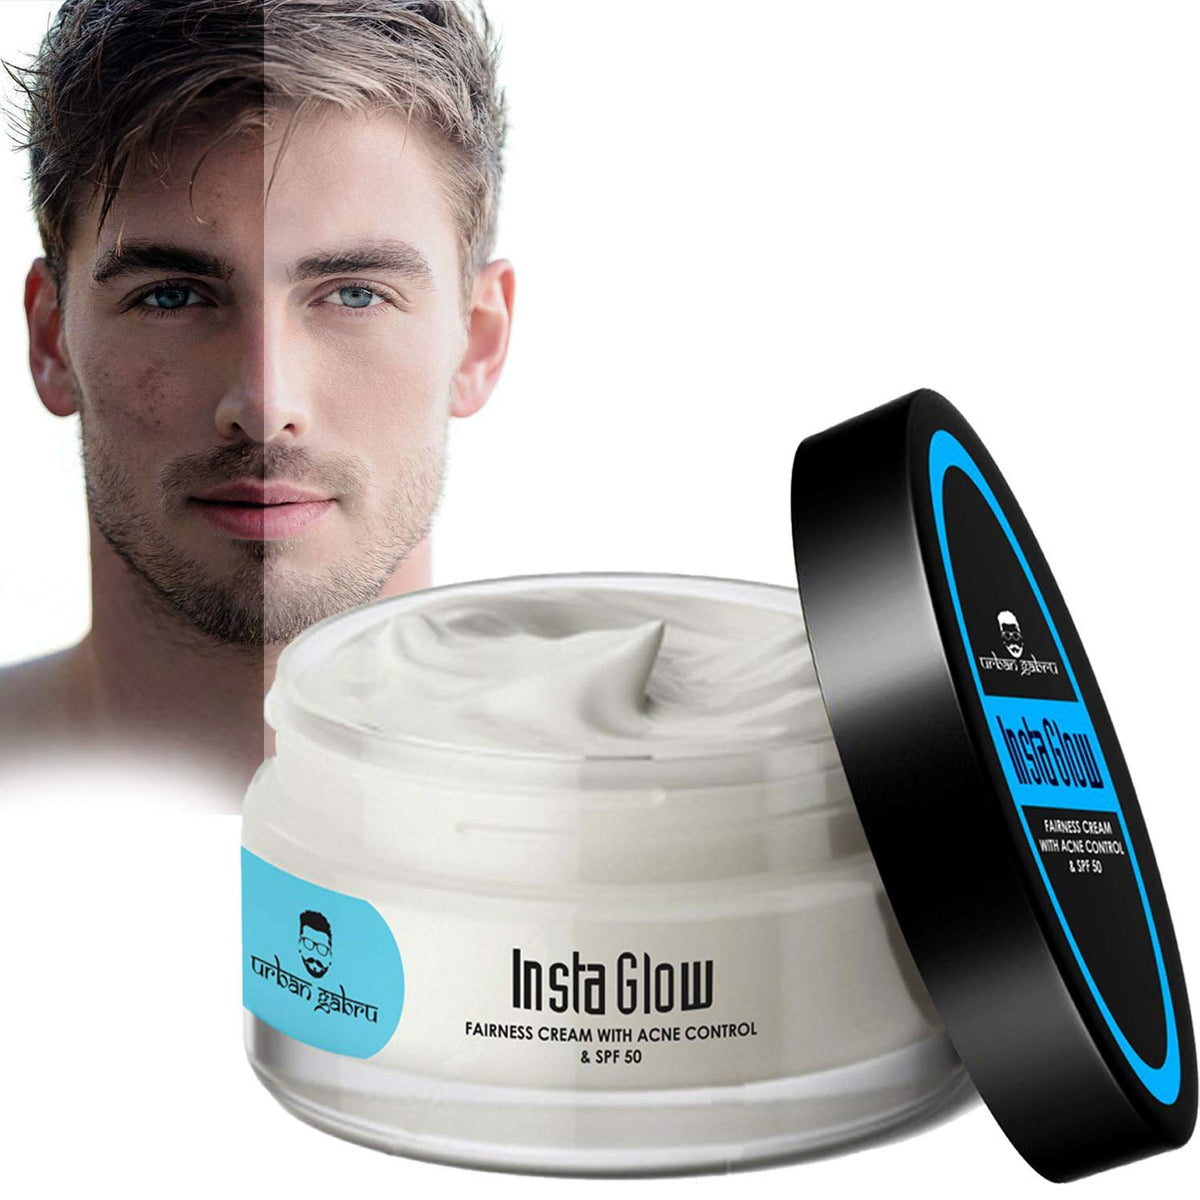 UrbanGabru Insta Glow Fairness Cream for Men (50 gm) with SPF 50 | Paraben & Sulphate Free